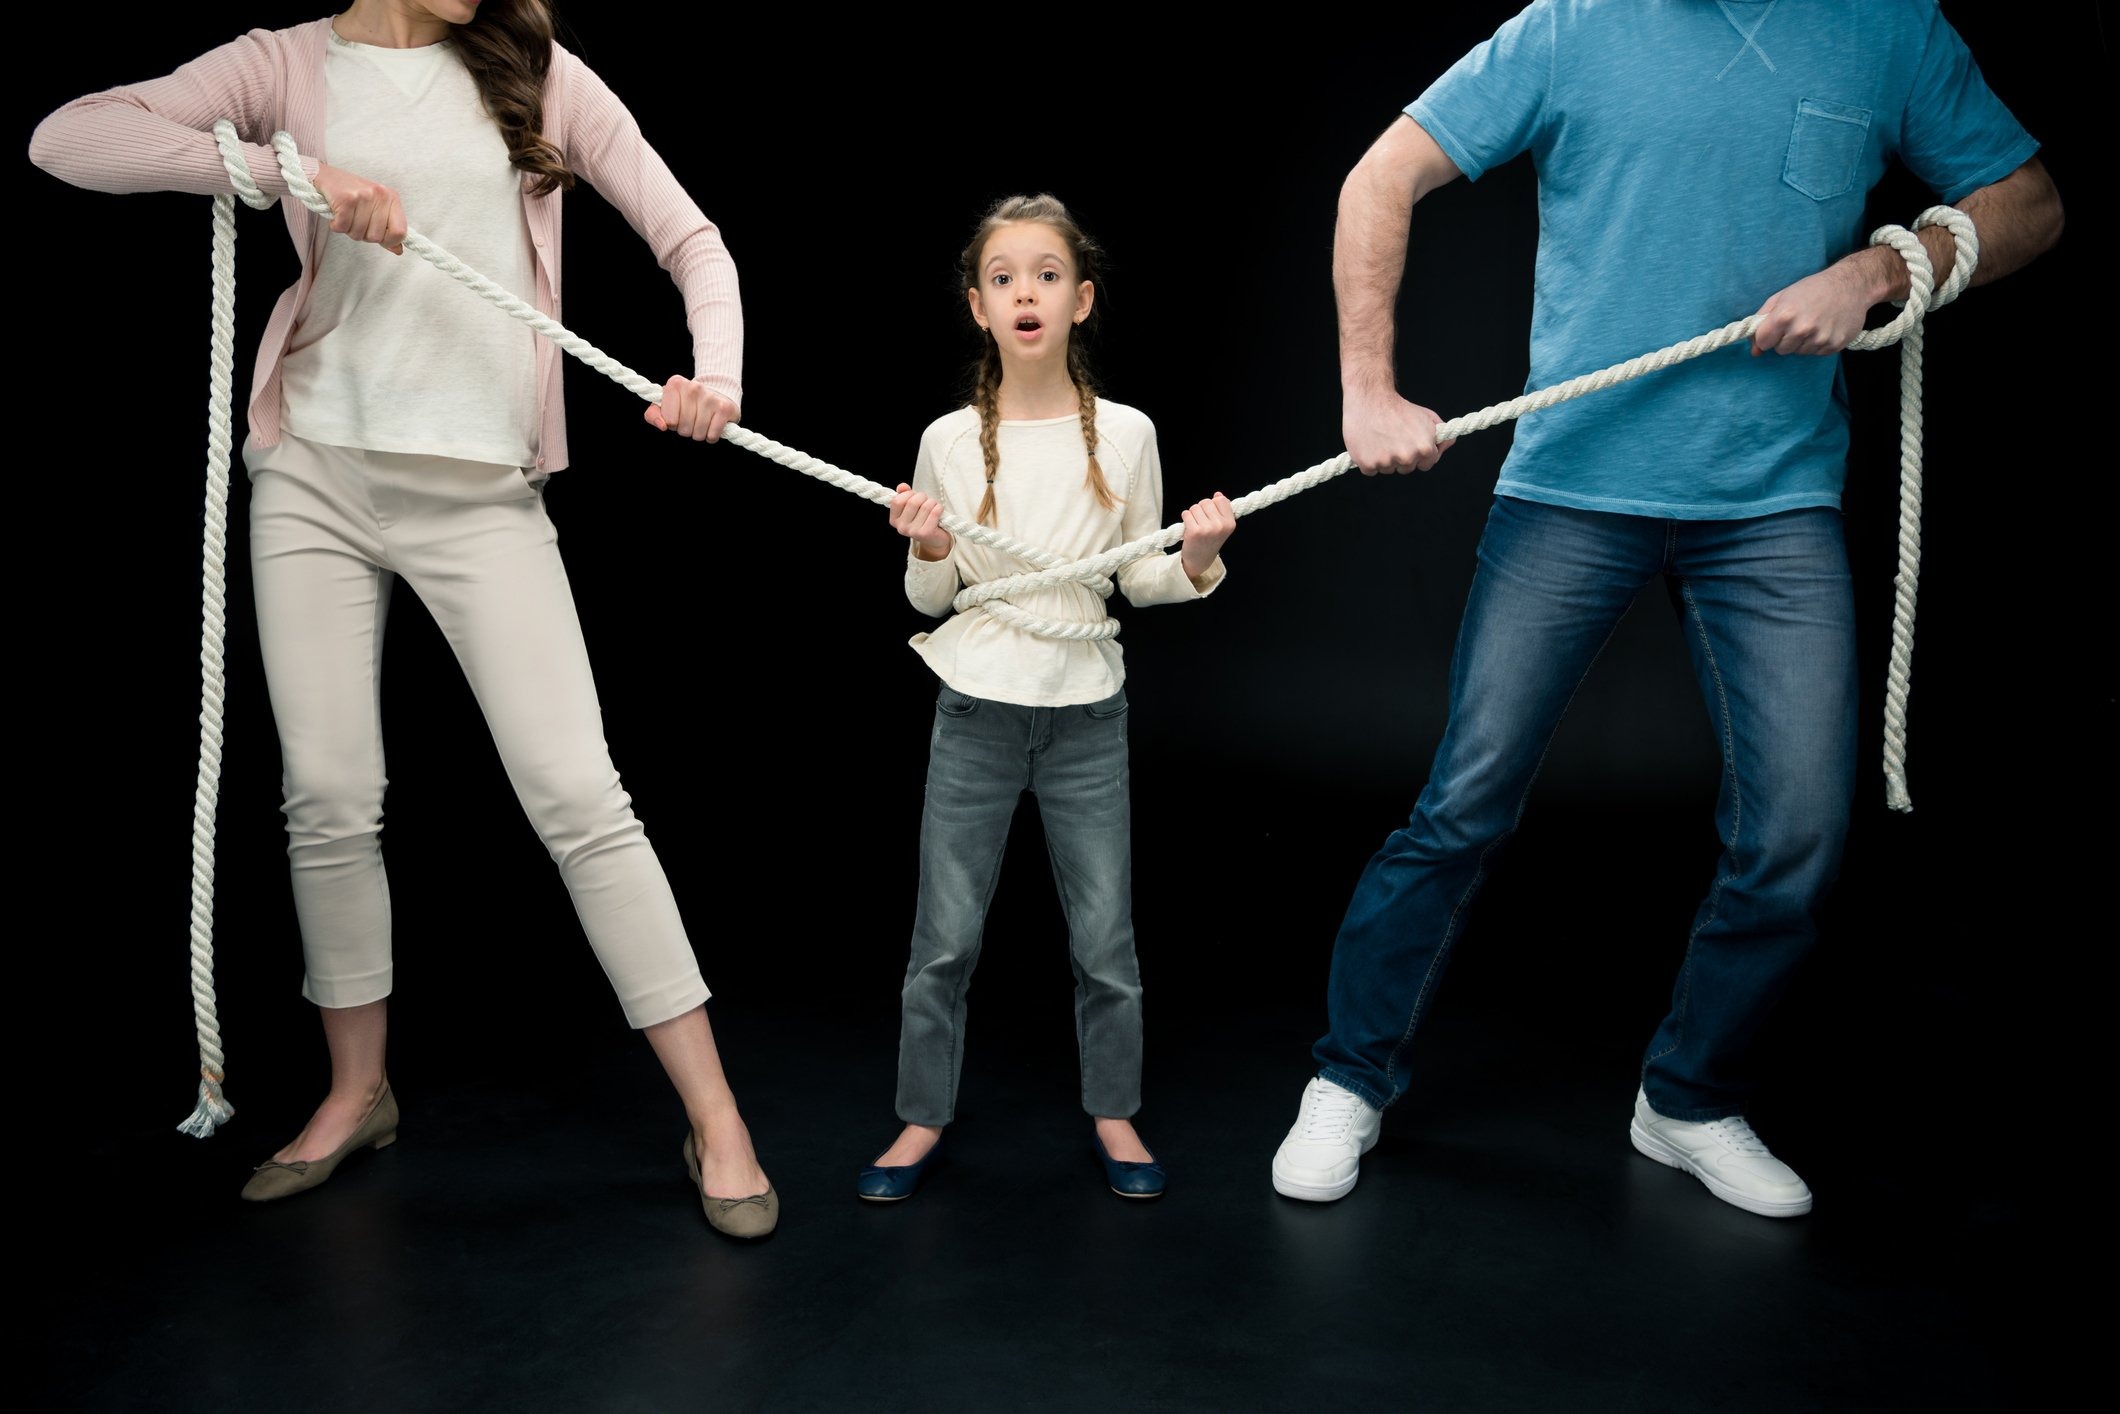 Alienação parental: entenda o que é e como prejudica as crianças